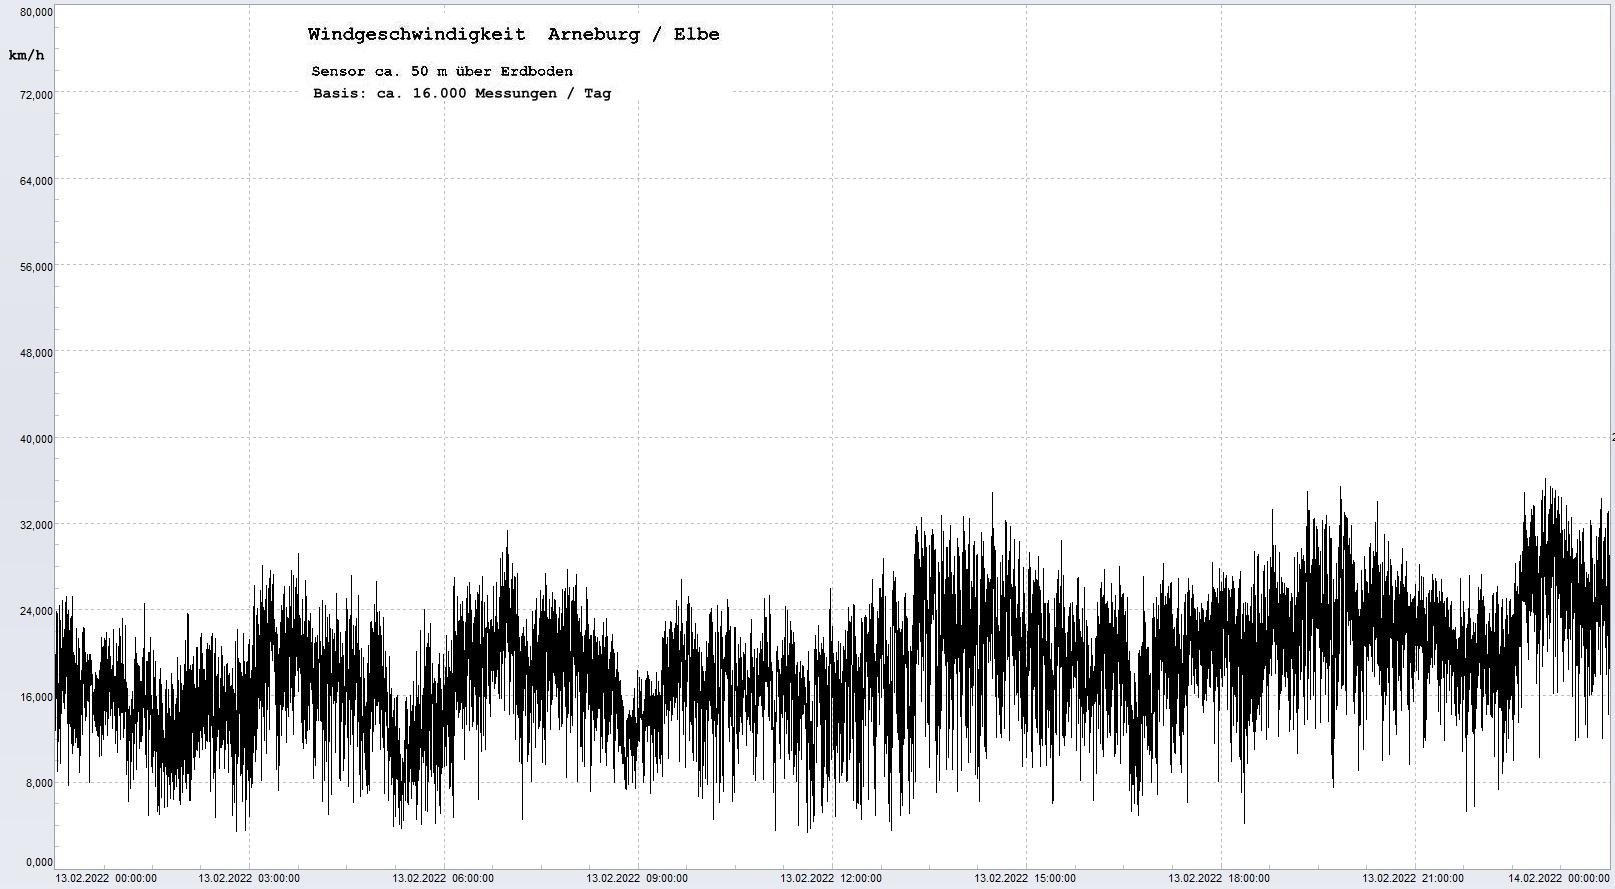 Arneburg Tages-Diagramm Winddaten, 13.02.2022
  Diagramm, Sensor auf Gebude, ca. 50 m ber Erdboden, Basis: 5s-Aufzeichnung